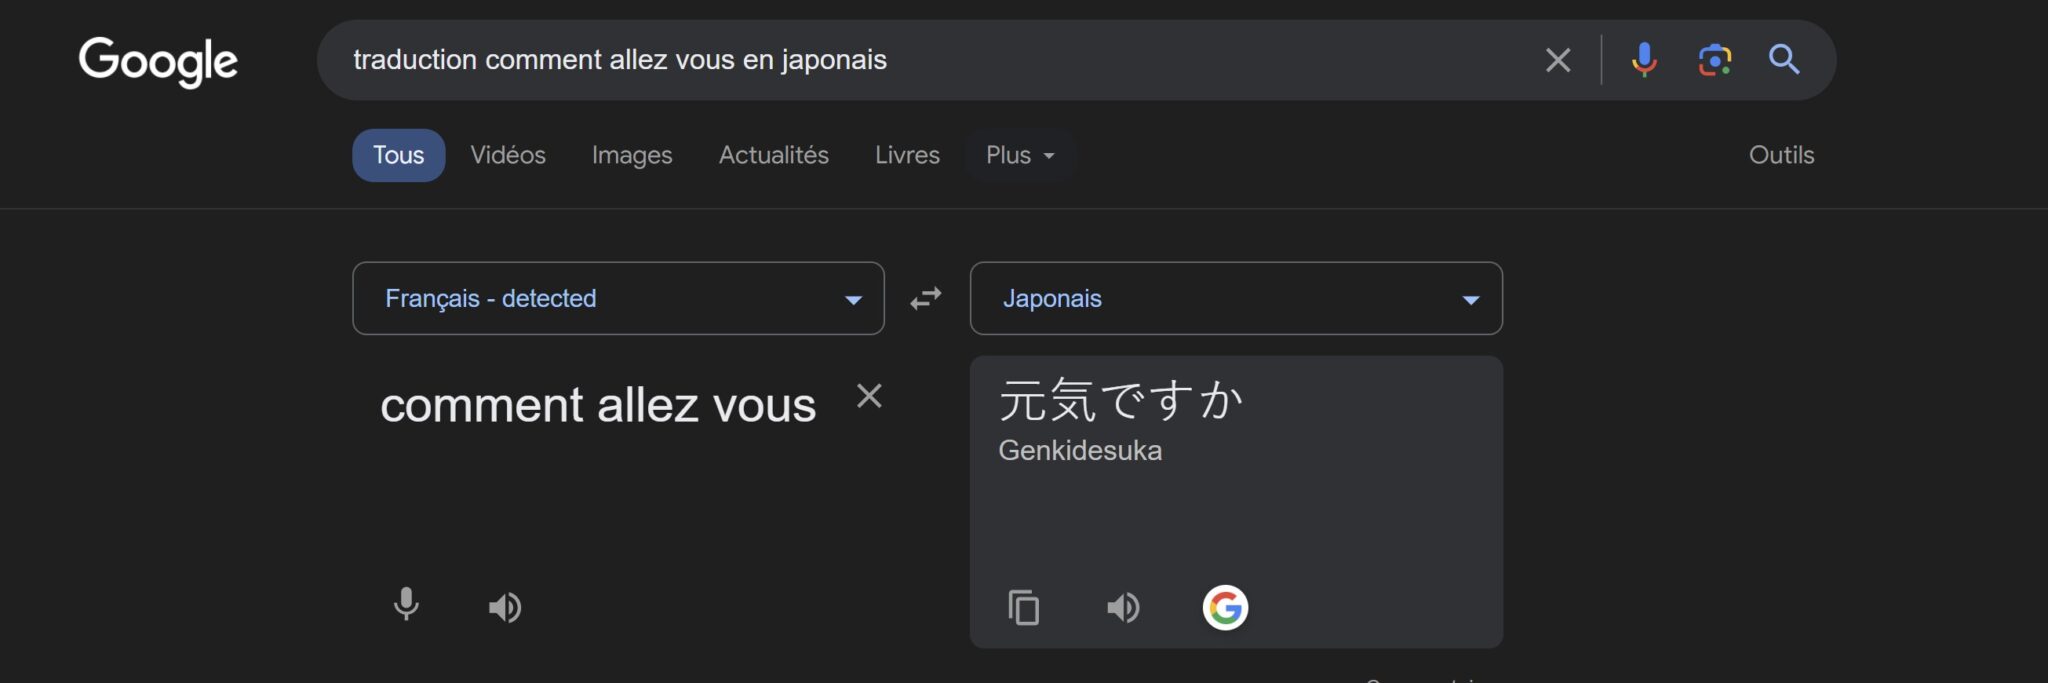 Google Traduction traduire du texte sur le navigateur